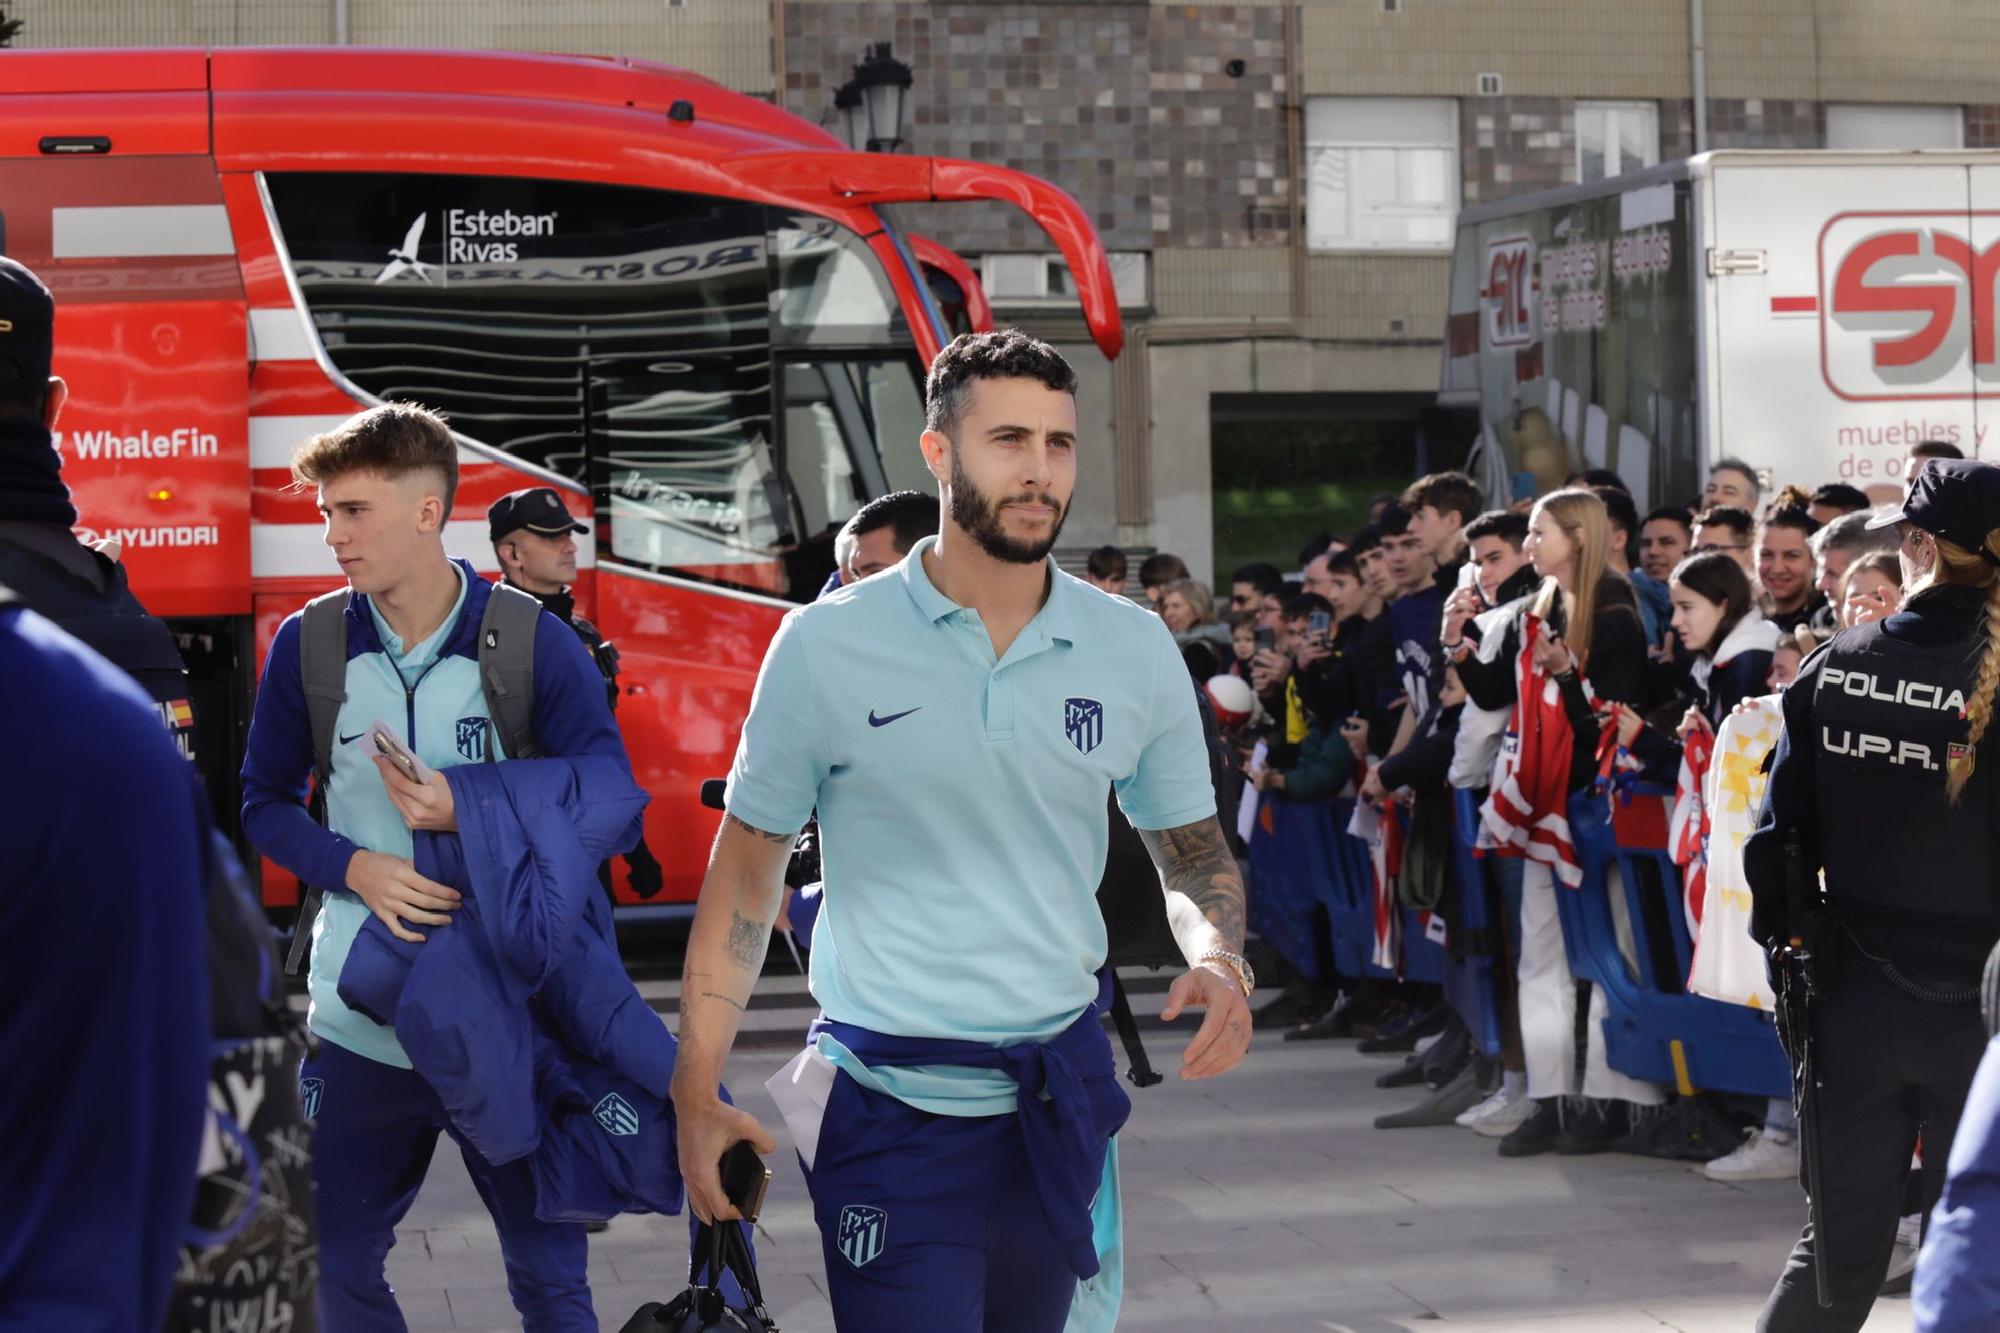 El Atlético de Madrid ya está en Oviedo: el Cholo, aclamado a su llegada por cientos de hinchas